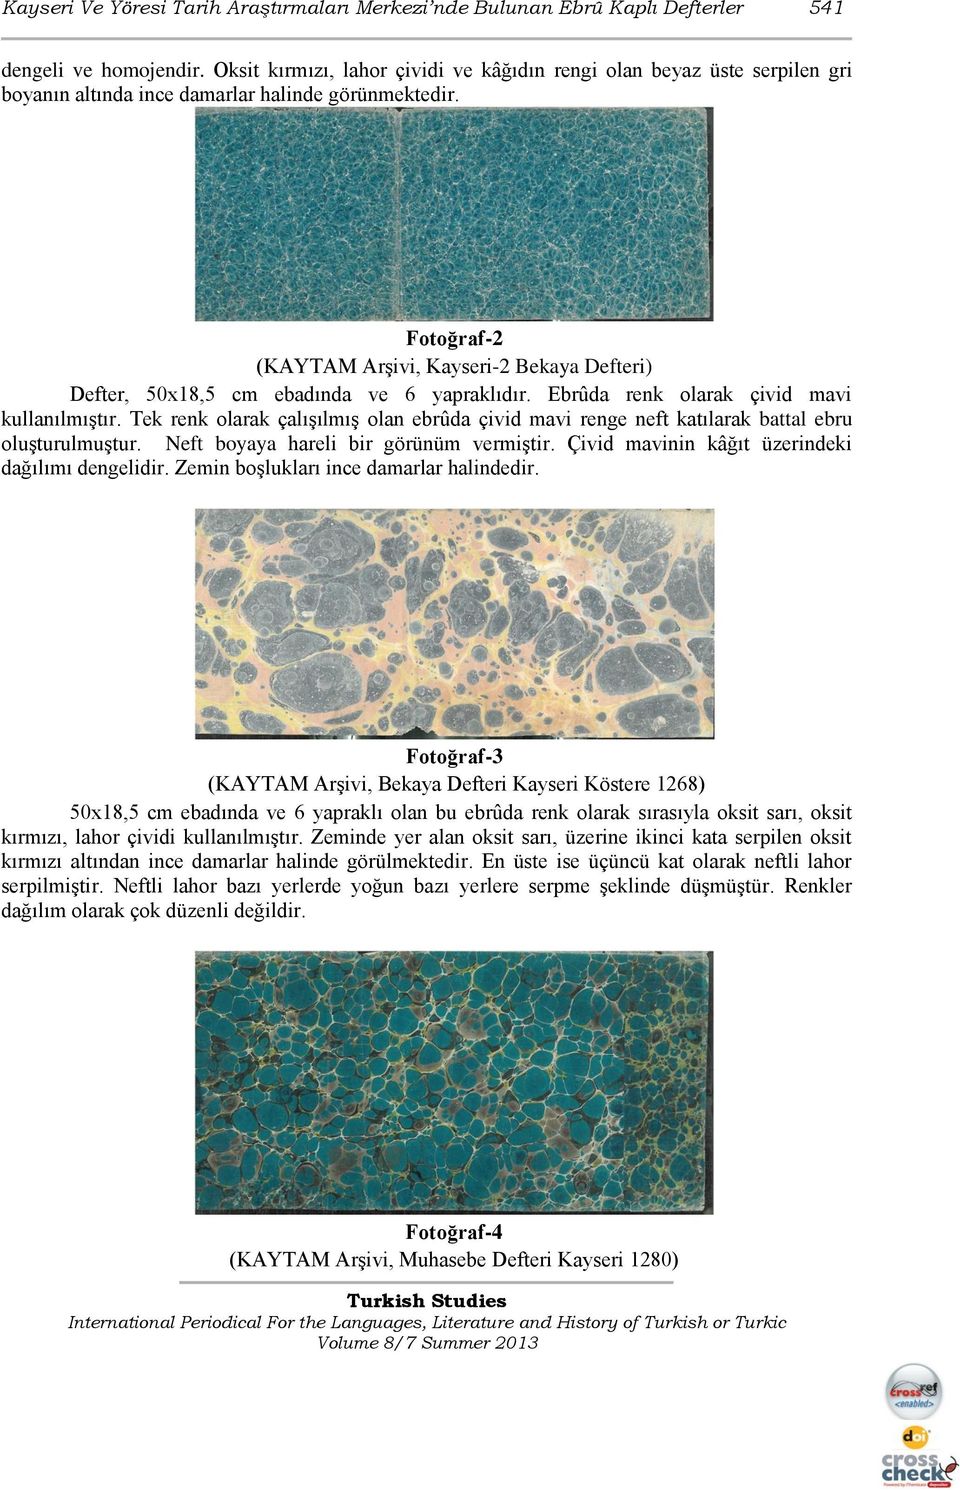 Fotoğraf-2 (KAYTAM Arşivi, Kayseri-2 Bekaya Defteri) Defter, 50x18,5 cm ebadında ve 6 yapraklıdır. Ebrûda renk olarak çivid mavi kullanılmıştır.